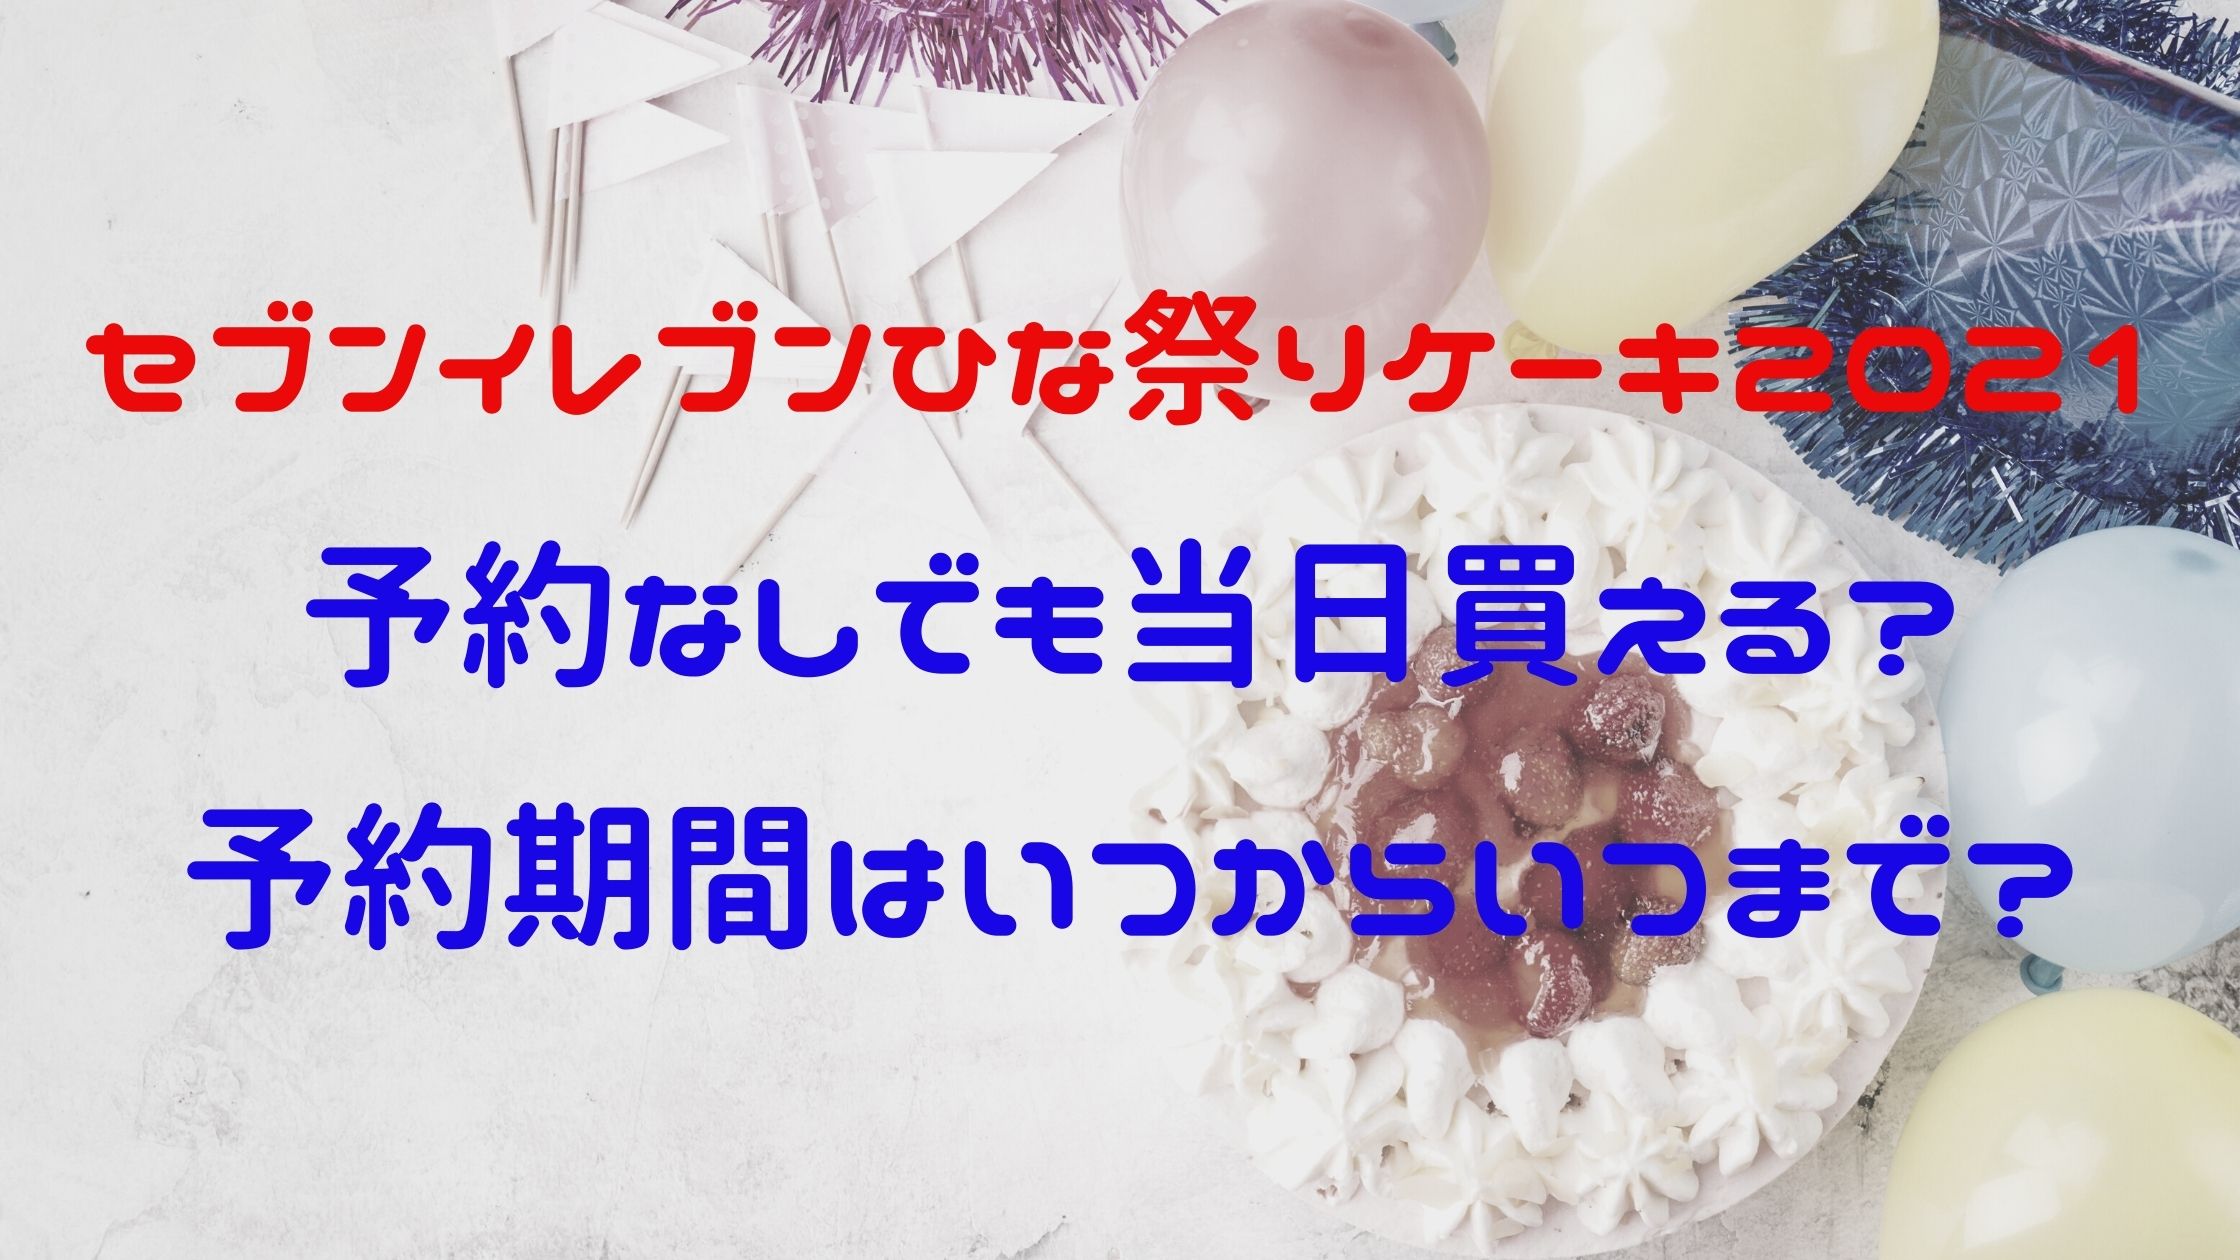 セブンイレブンひな祭りケーキ21予約なしでも当日買える 予約期間はいつからいつまで Naohana Blog